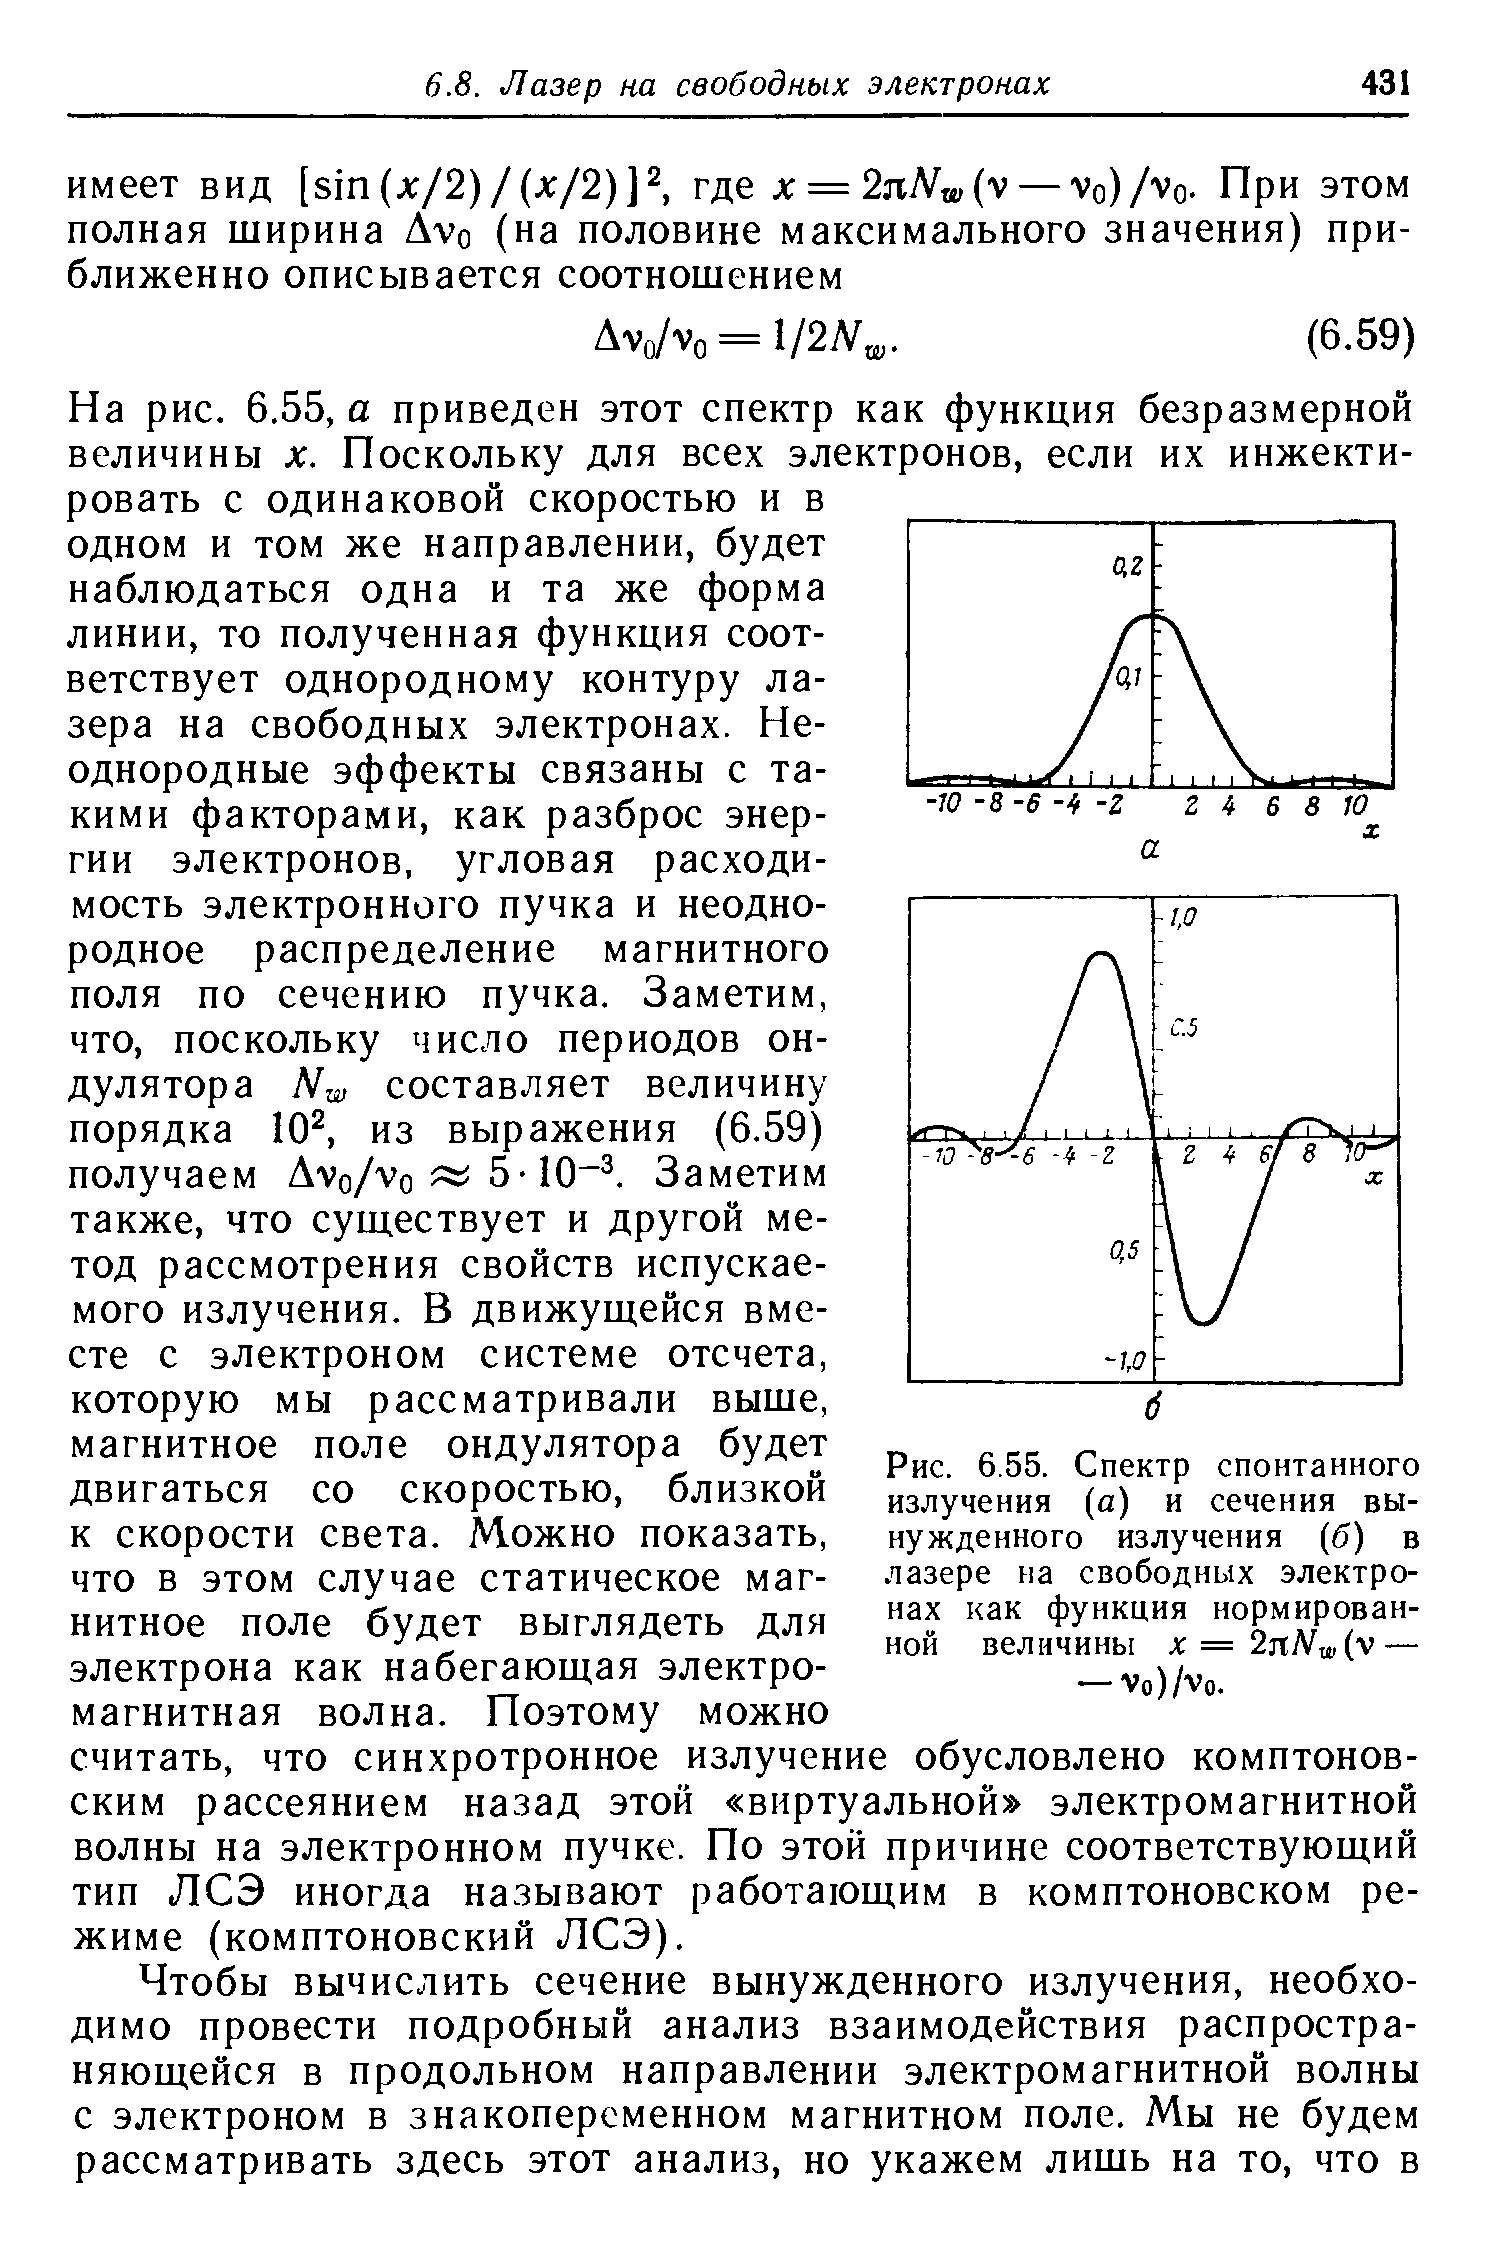 Рис. 6.55. <a href="/info/412658">Спектр спонтанного излучения</a> (а) и <a href="/info/144161">сечения вынужденного излучения</a> (б) в лазере на <a href="/info/188635">свободных электронах</a> как функция нормированной величины x=2nNw(y — — Vo)/Vo.
